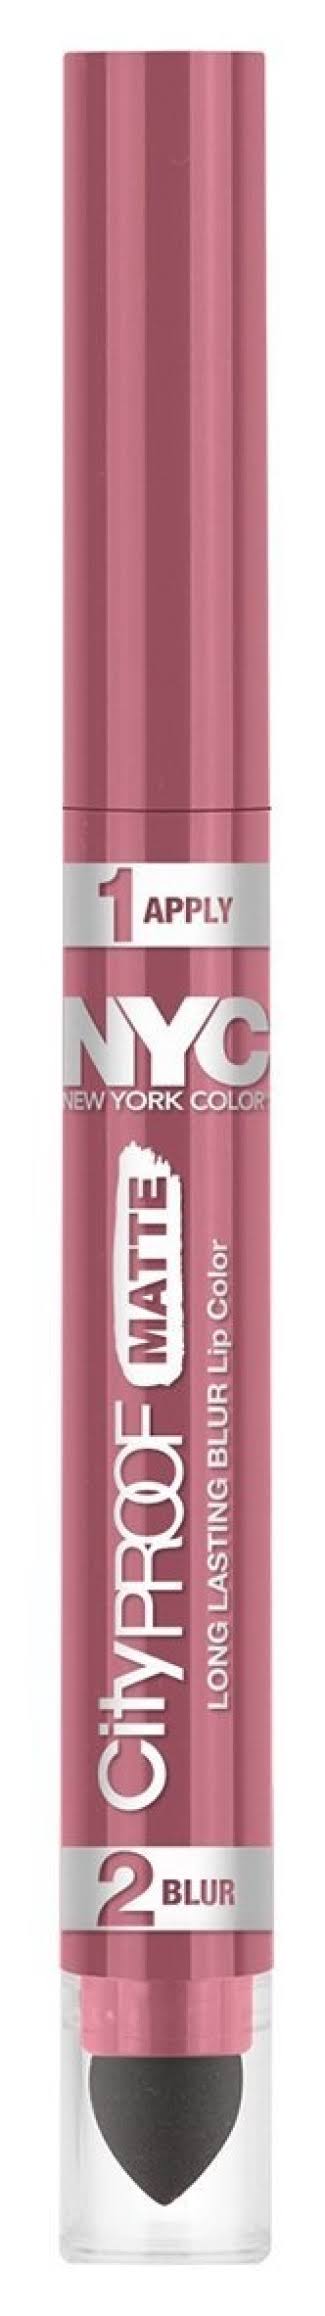 Nyc City Proof Matte Blur Lip Color - Manhattan Mauve